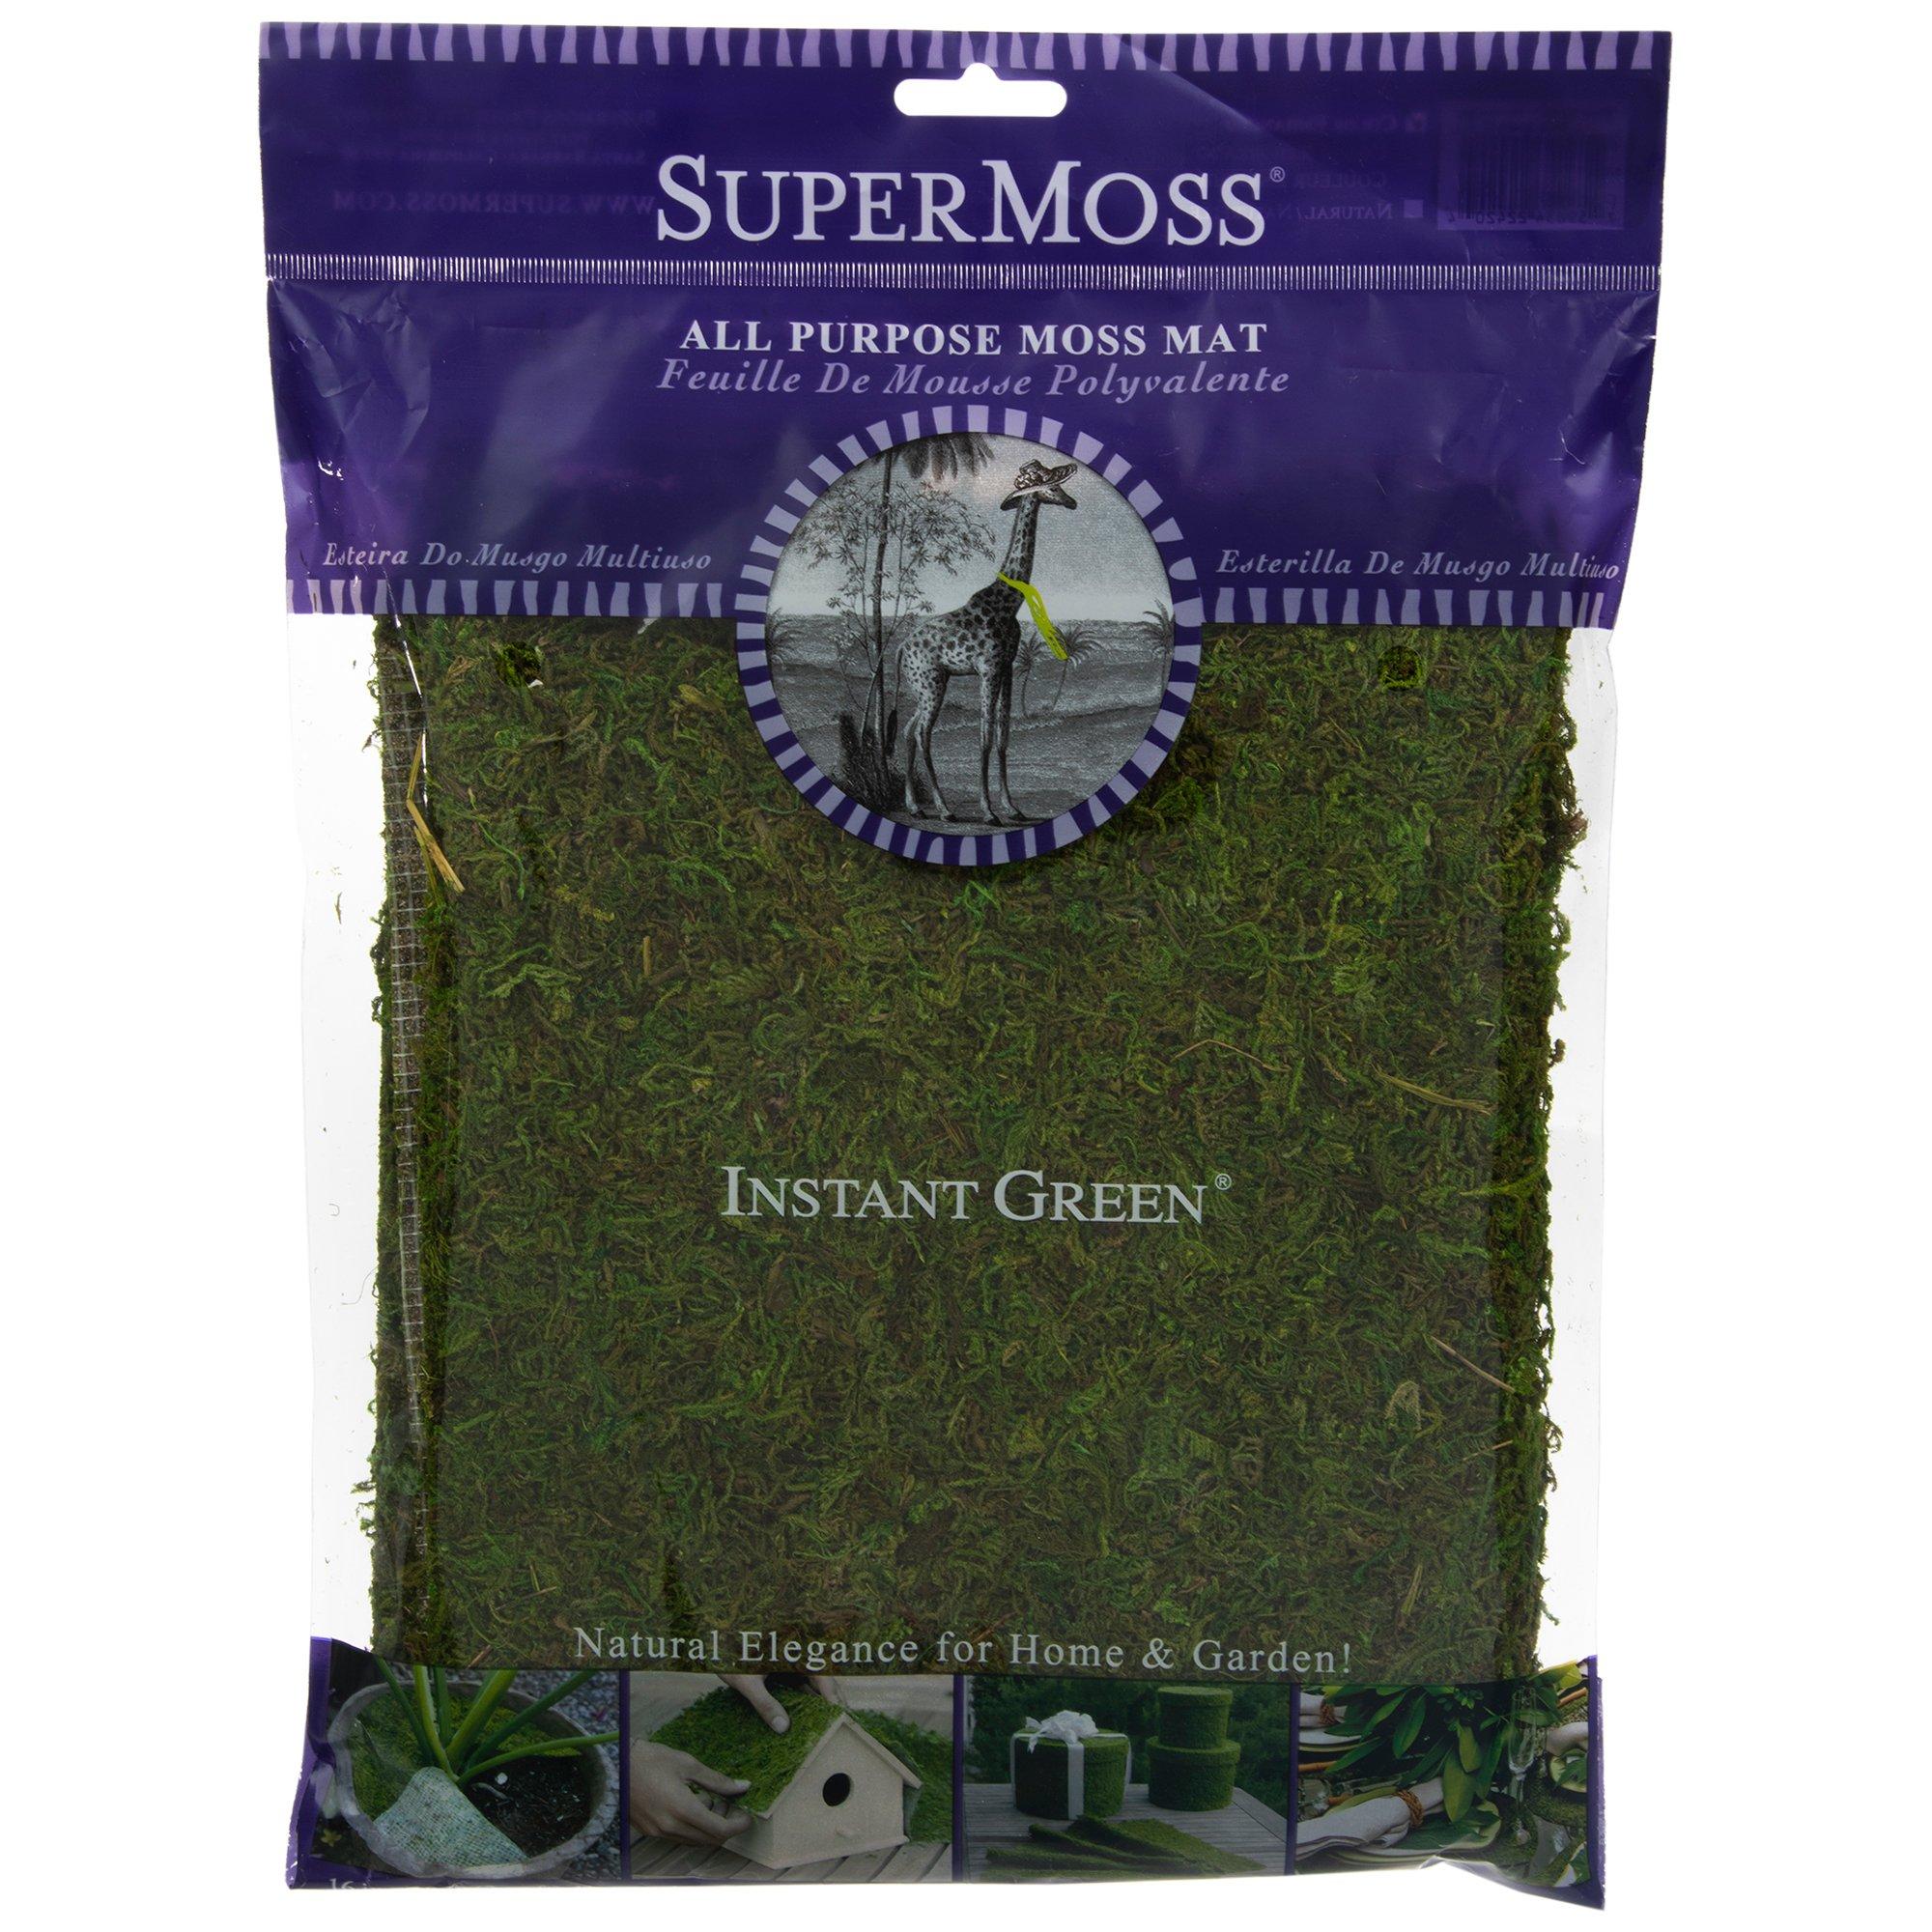 All Purpose Moss Mat - 16 x 18